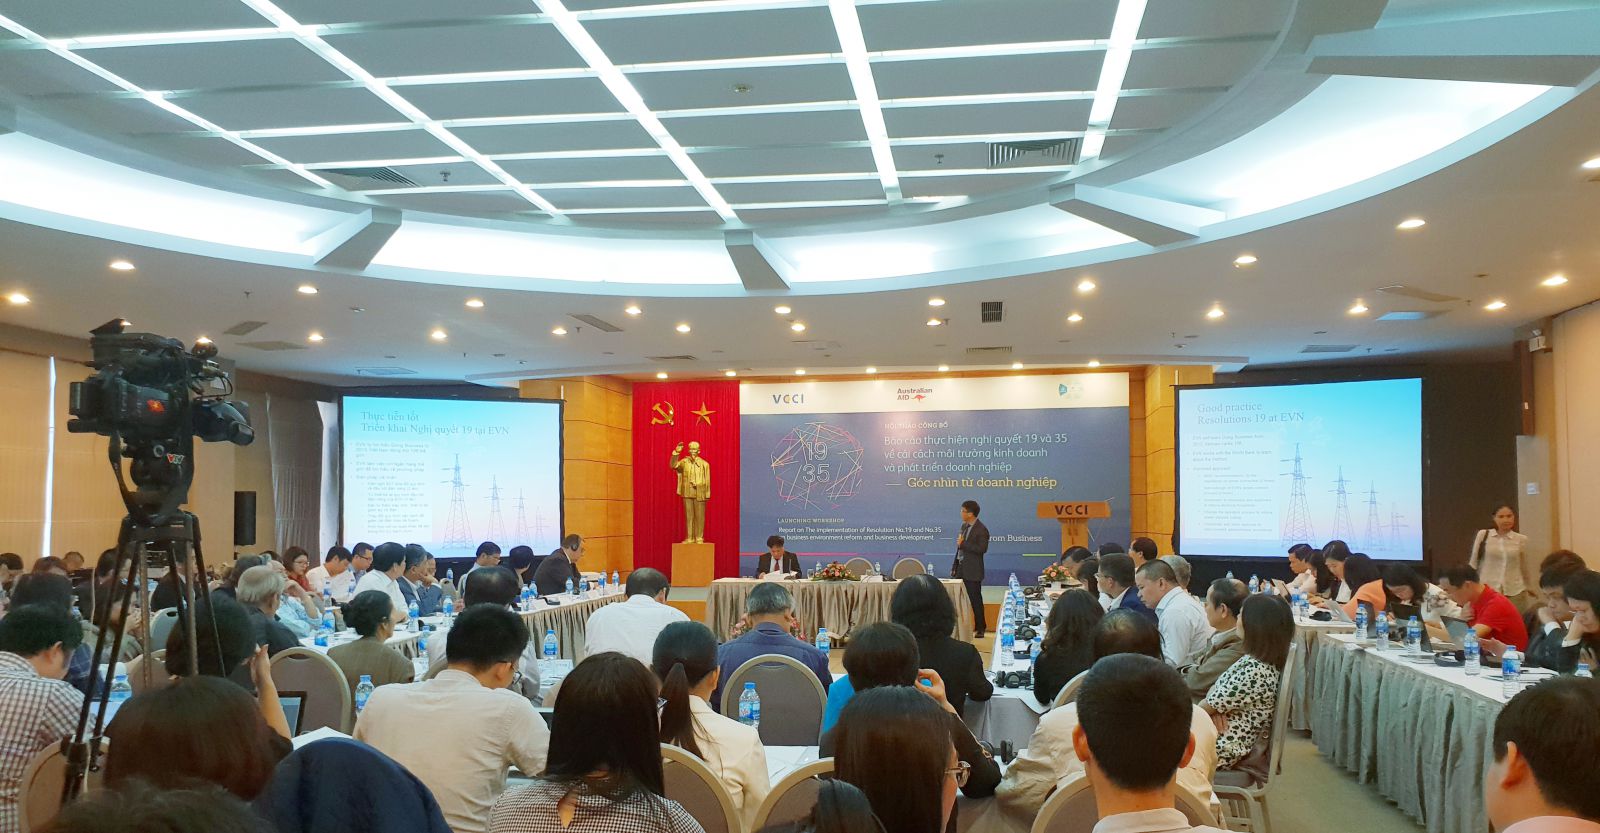 Hội thảo Báo cáo Thực hiện Nghị quyết 19 và 35 về cải cách môi trường kinh doanh và phát triển doanh nghiệp – Góc nhìn từ doanh nghiệp được tổ chức sáng nay (20/11) tại Hà Nội.